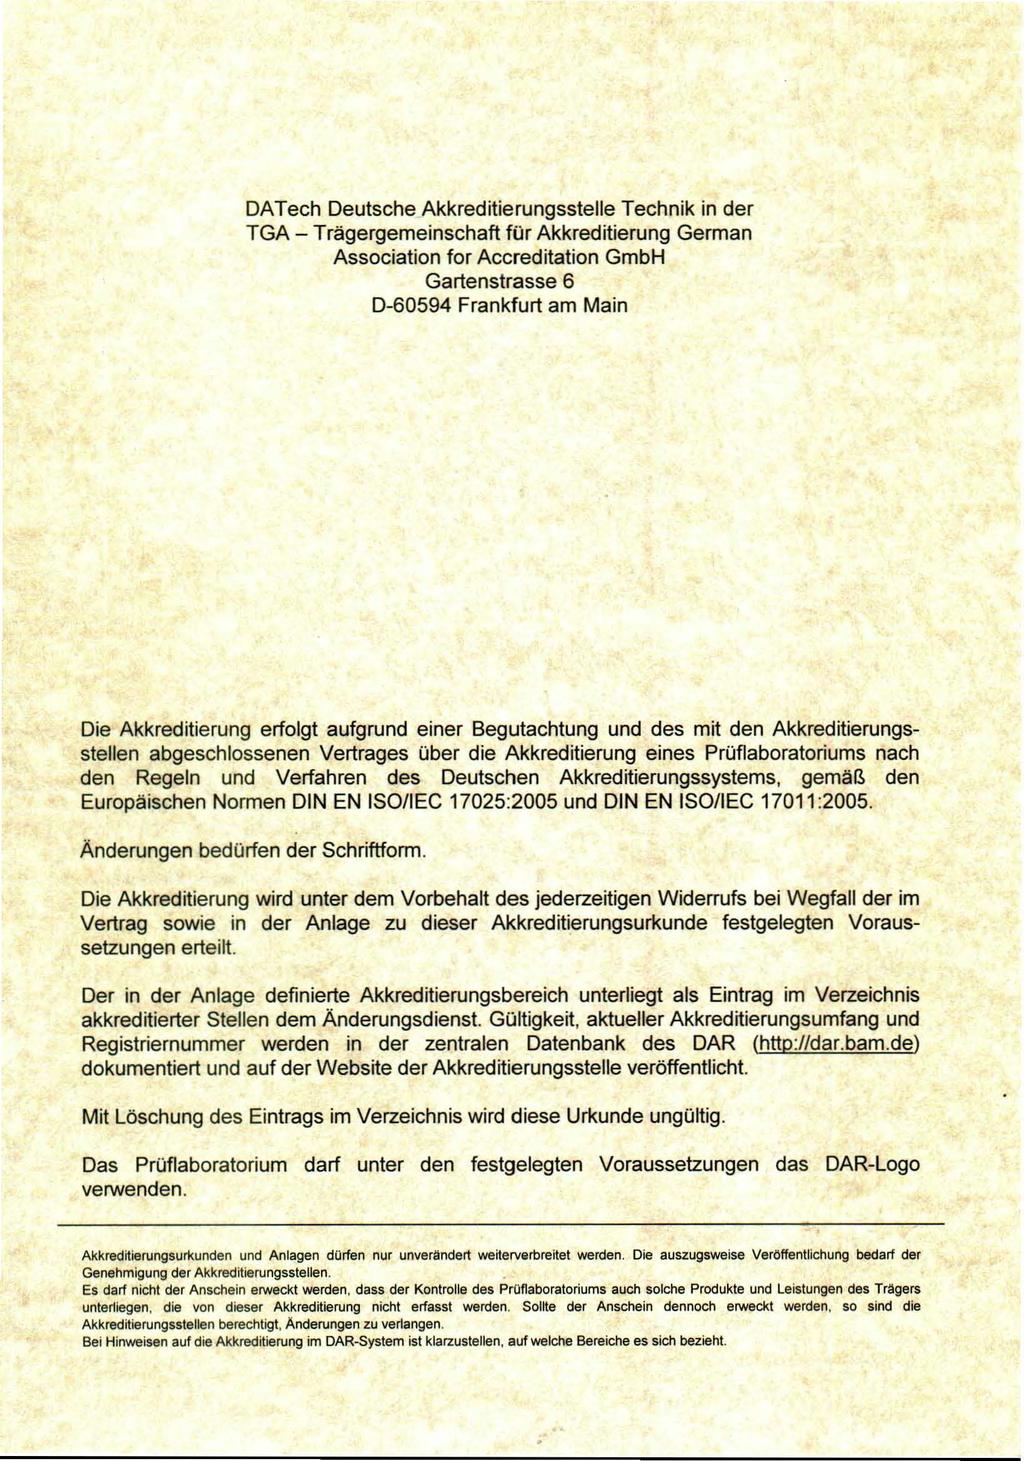 DATech Deutsche Akkreditierungsstelle Technik in der TGA - Trägergemeinschaft für Akkreditierung German Association for Accreditation GmbH Gartenstrasse 6 0-60594 Frankfurt am Main Die Akkreditierung